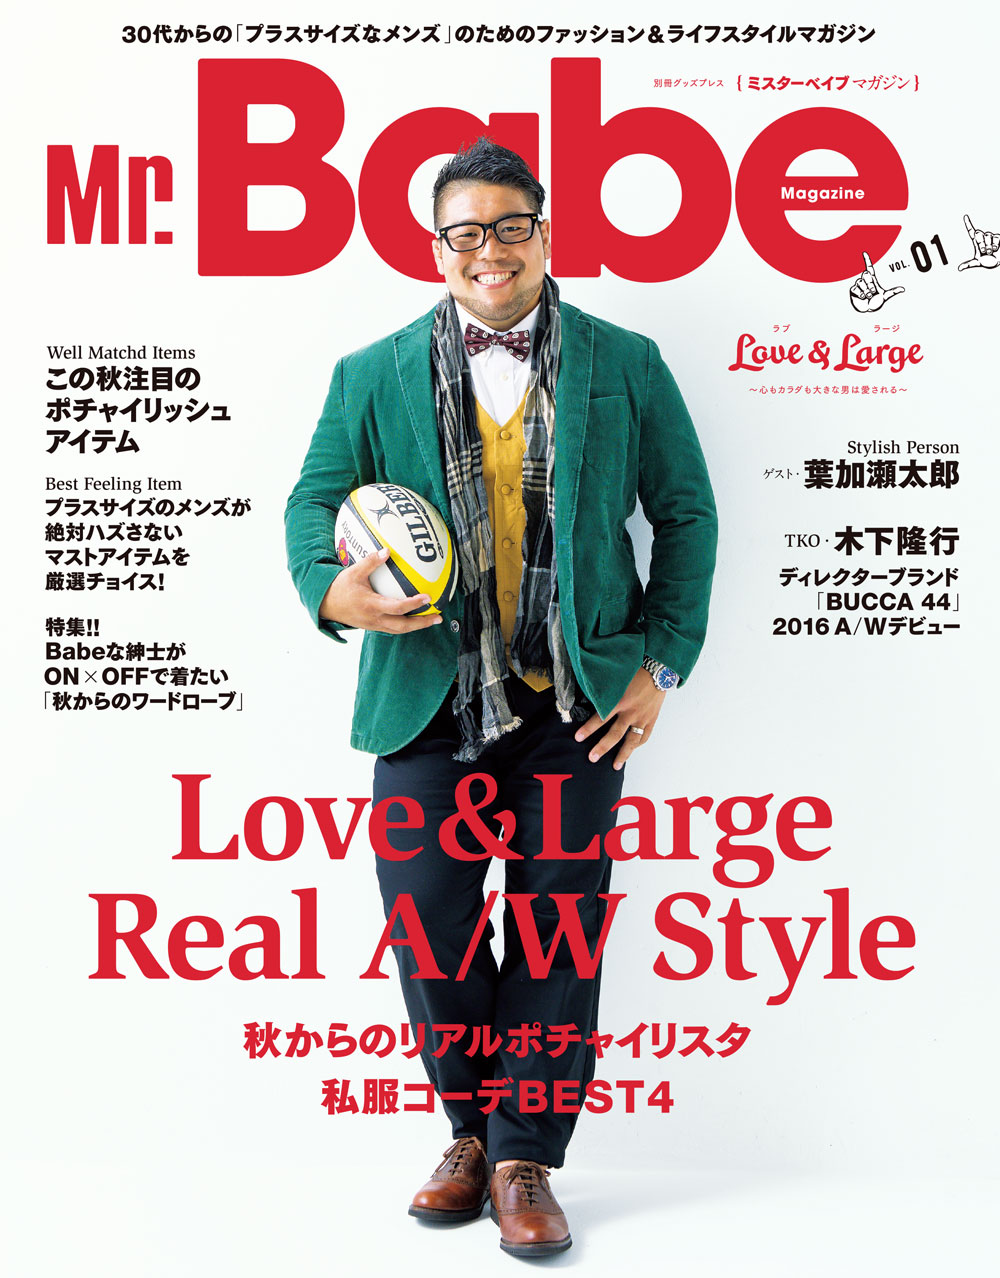 二層 モック 後方に 30 代 男性 ファッション 誌 Kawakatsunaika Jp